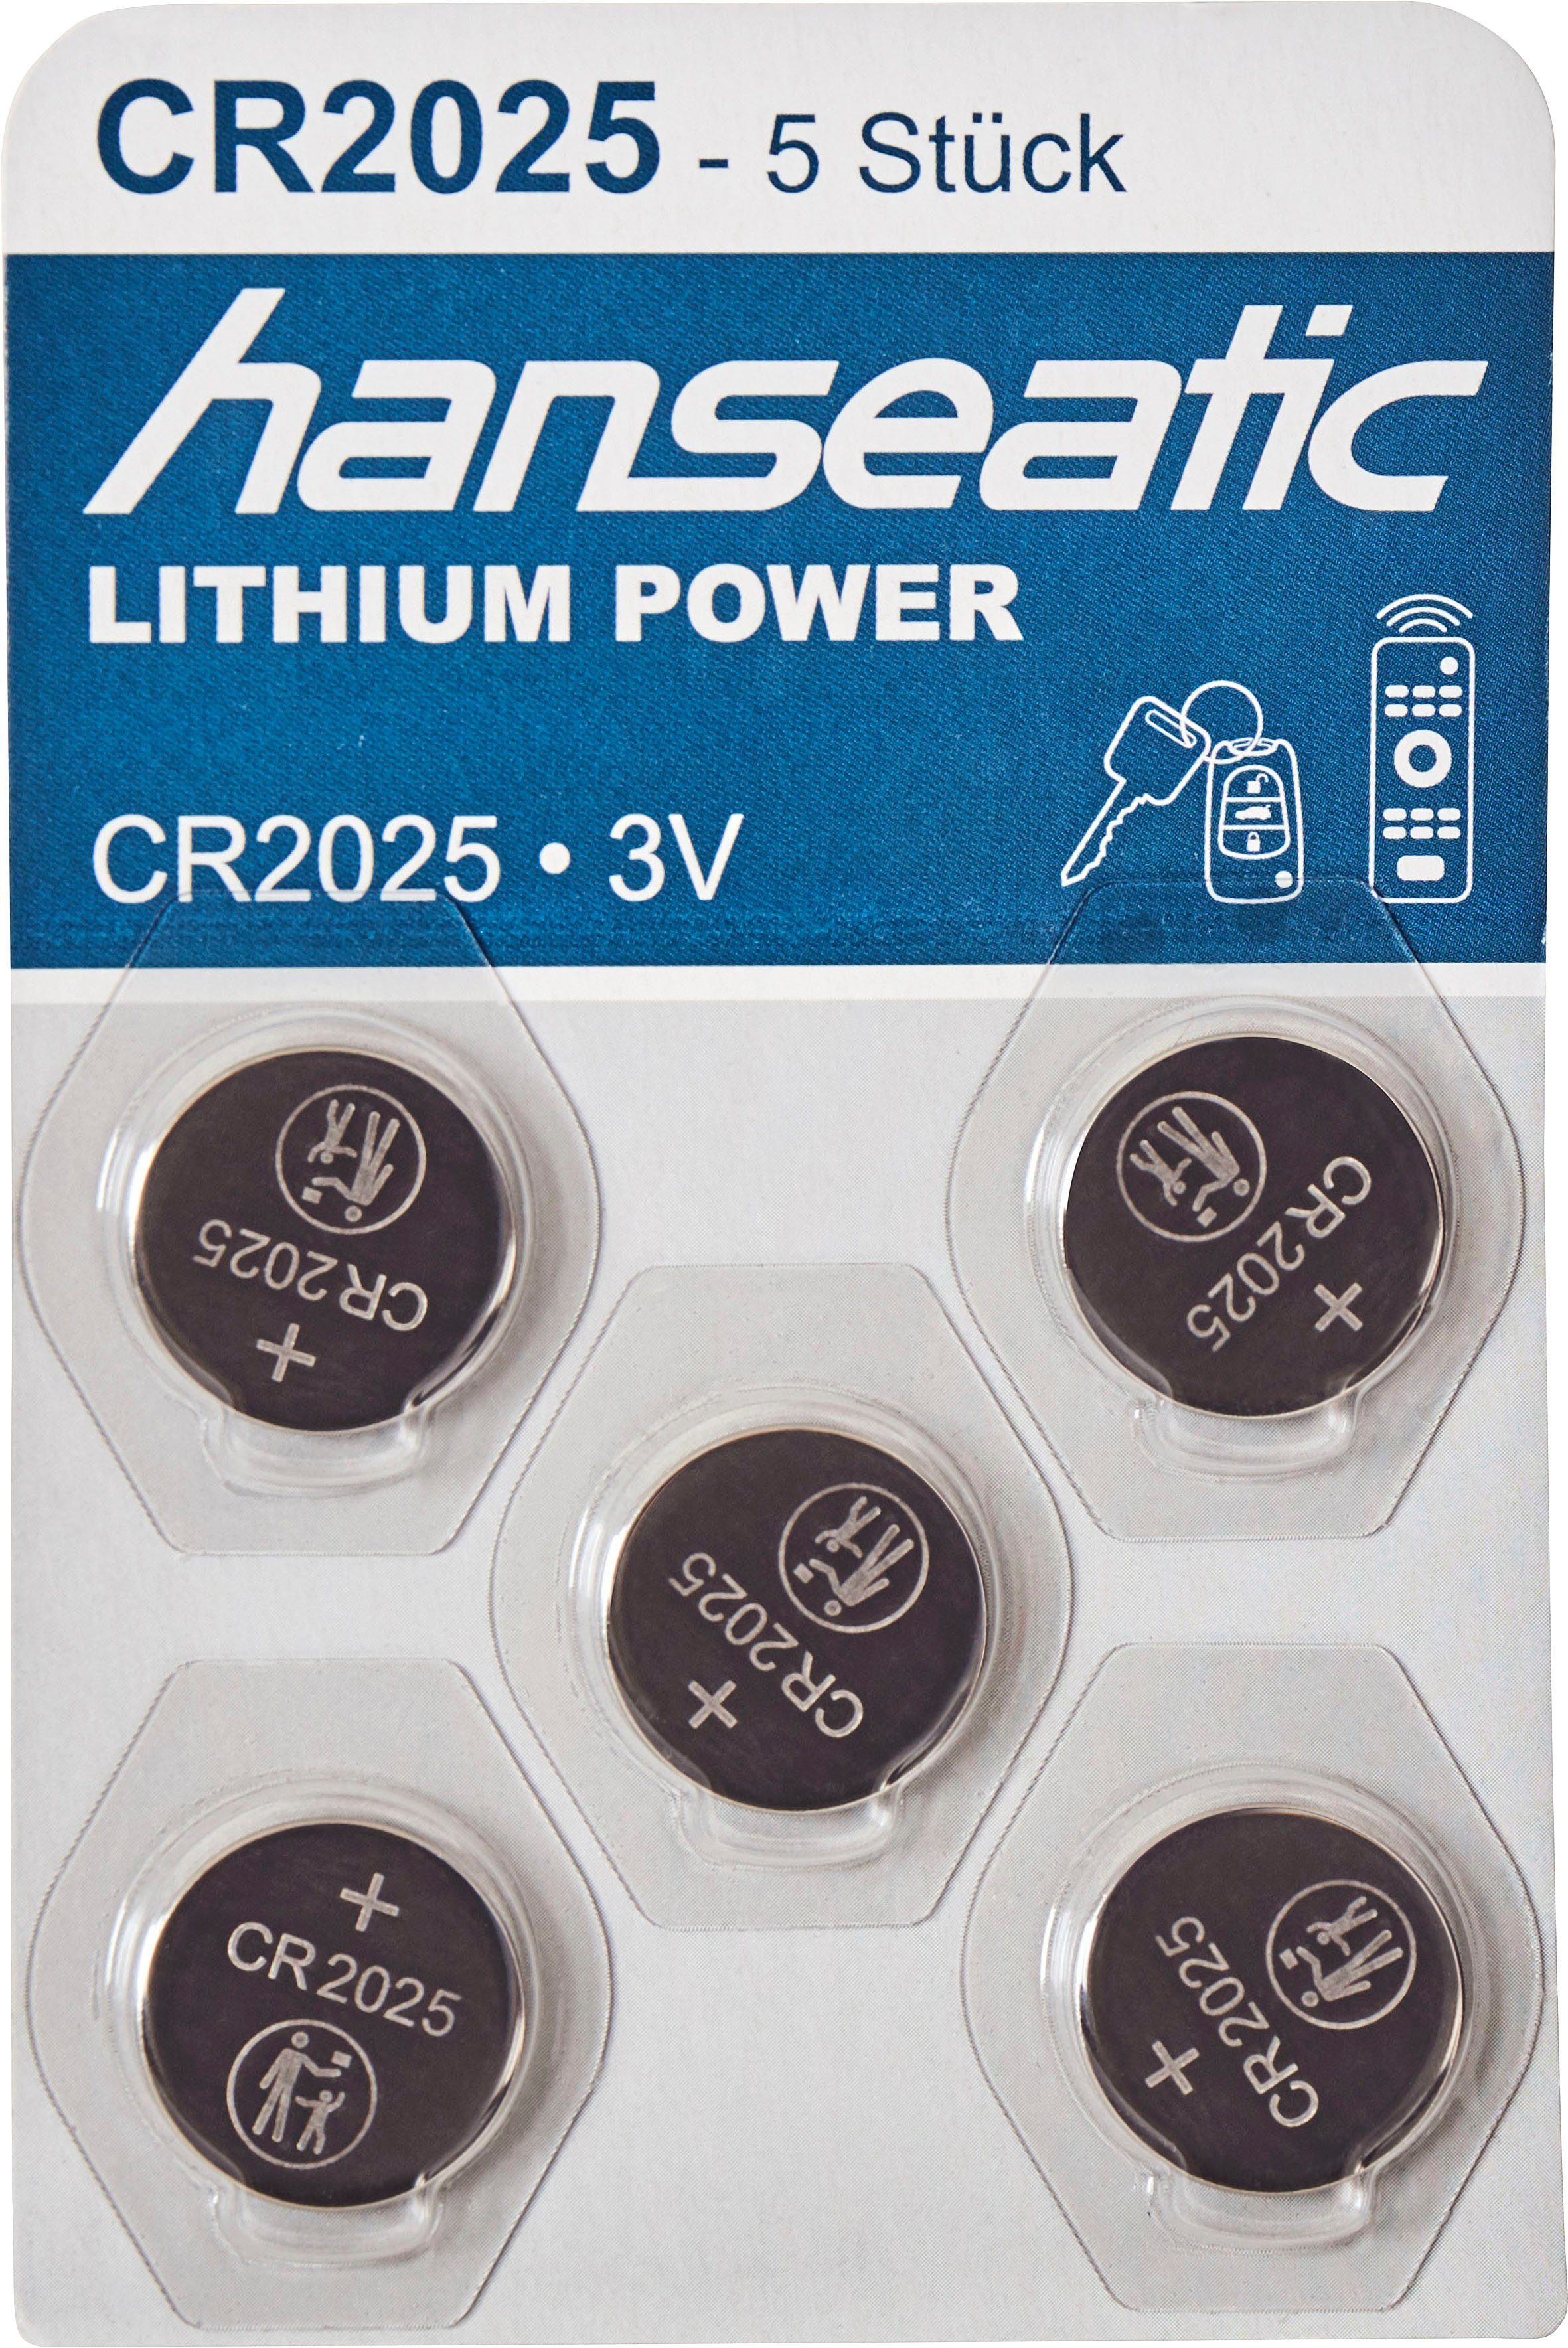 2025 5x Mix + Set Batterie Hanseatic 2032 15 St), CR 10x CR Stück Batterie, CR2032 (15